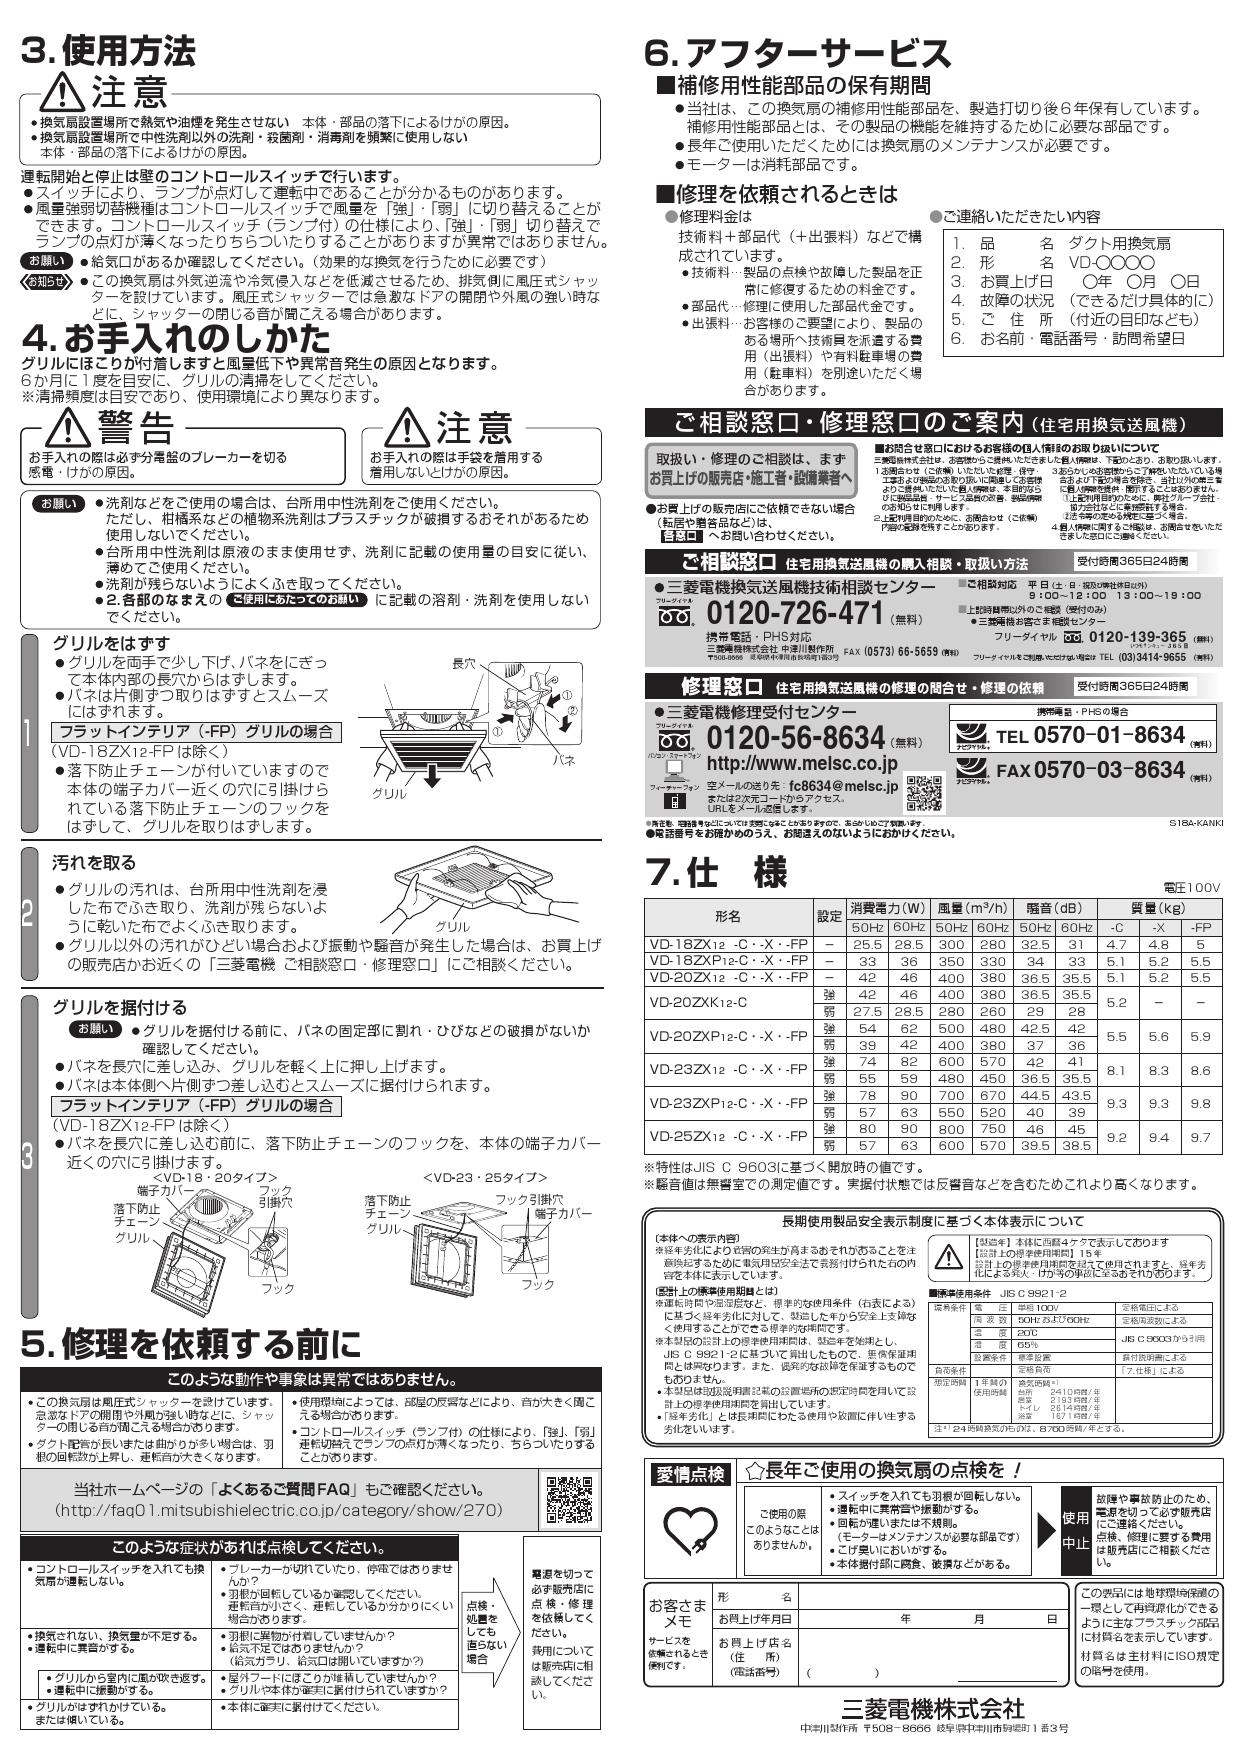 超目玉枠】 VD-18zxp12c 三菱 ダクト用換気扇 その他 - www